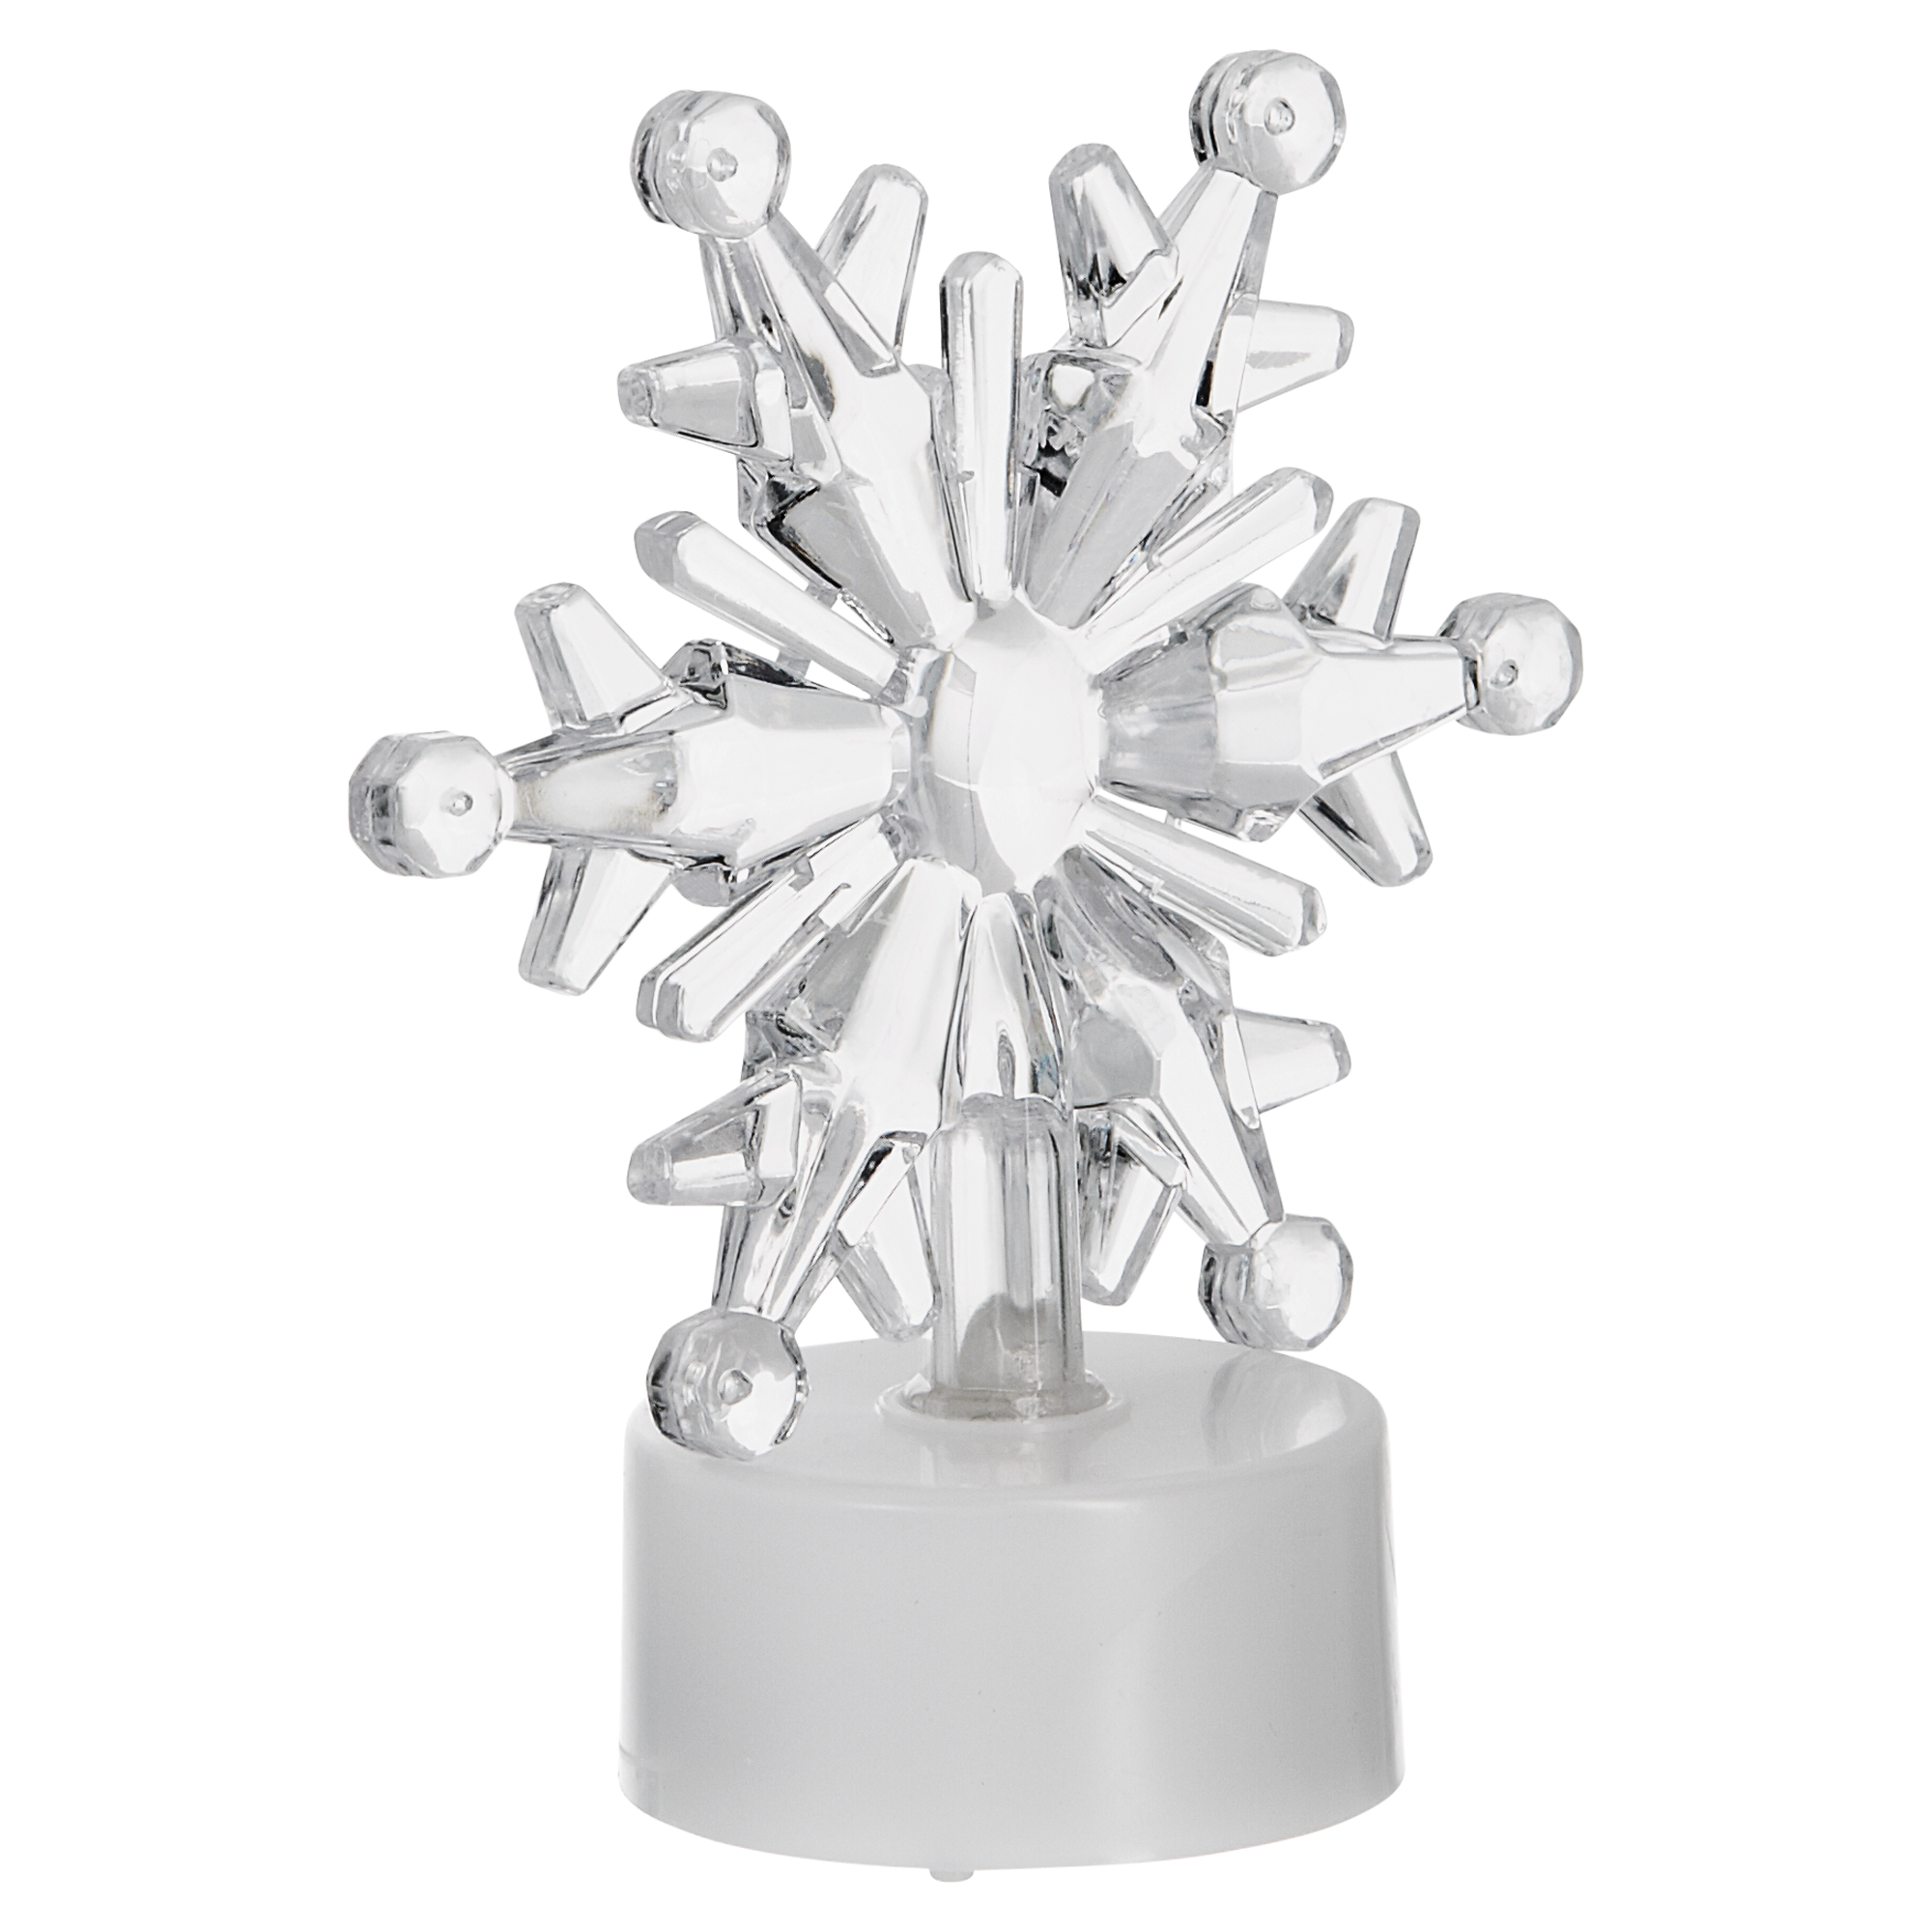 LED-Teelicht 'Schneeflocke' weiß Ø 3,5 cm, mit Farbwechselfunktion + product picture